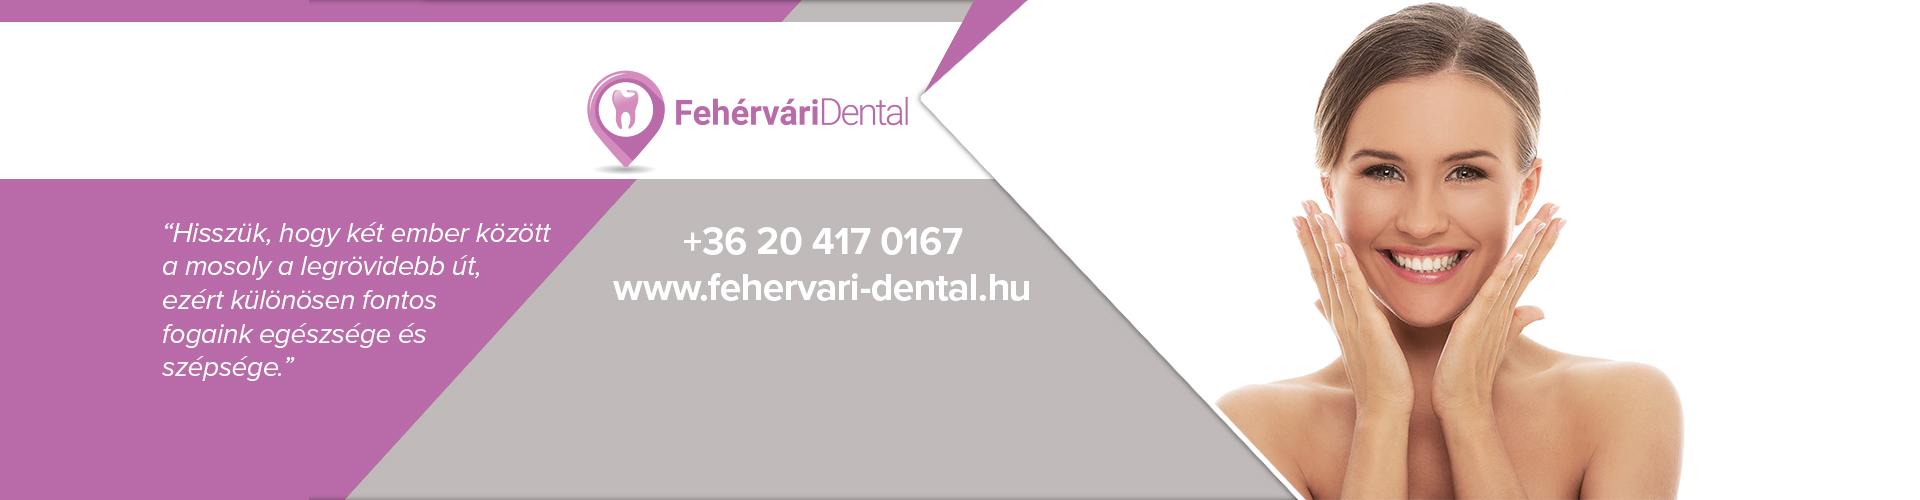 Fehérvári Dental